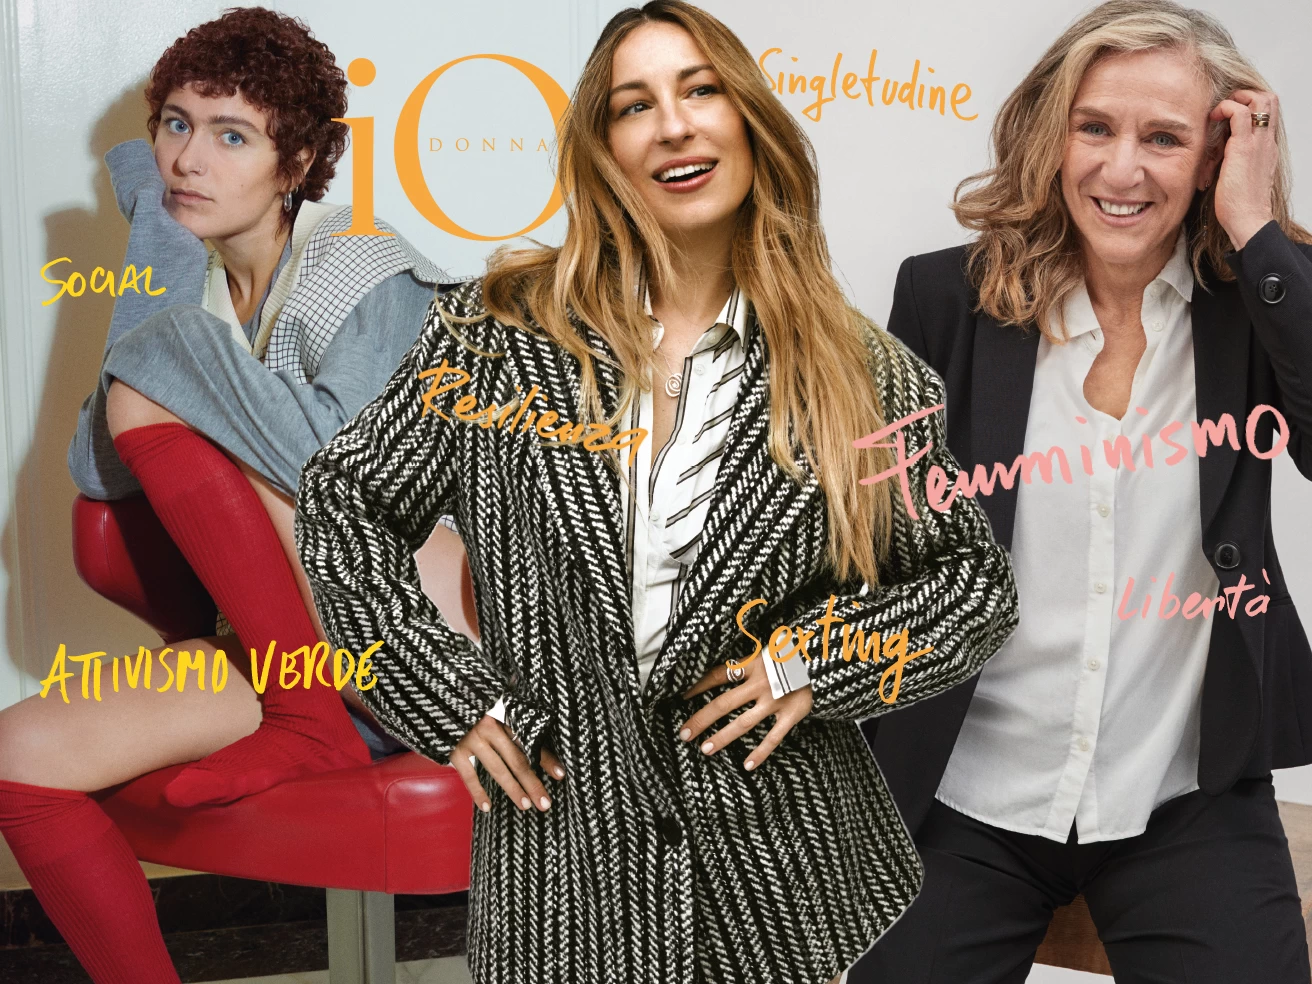 Trois générations de femmes comparées : Giovanna Botteri, Mia Cerna et Sofia Viscardi